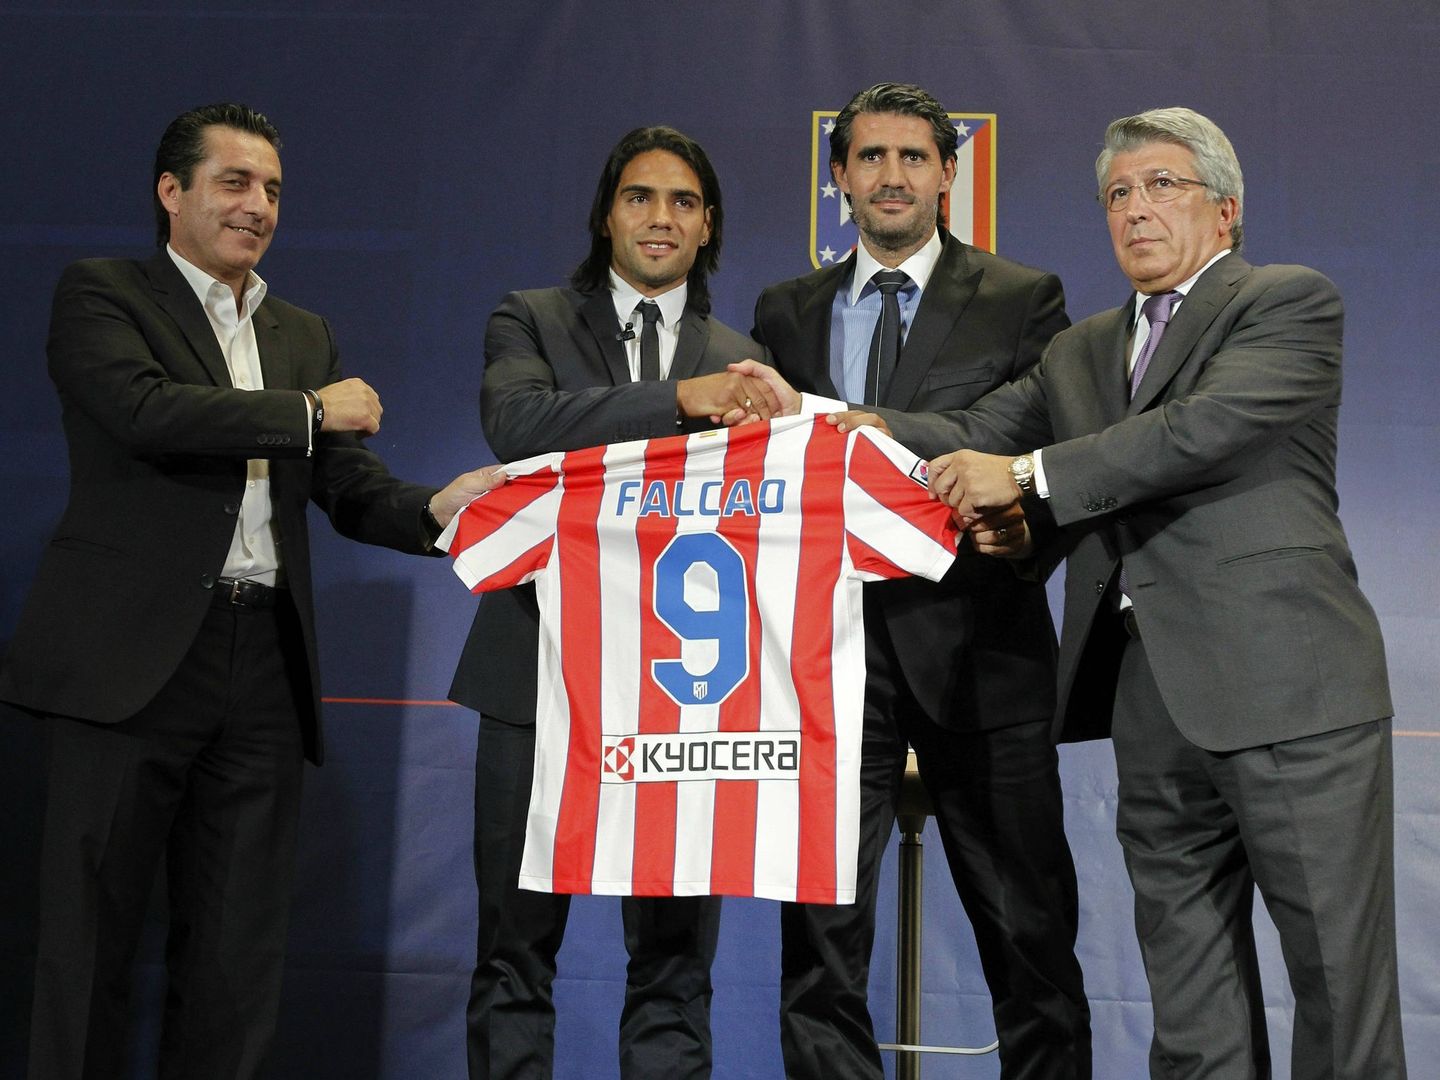 Doyen financió parte del dinero pagado por el Atlético al Oporto para fichar a Falcao en 2011. (EFE)